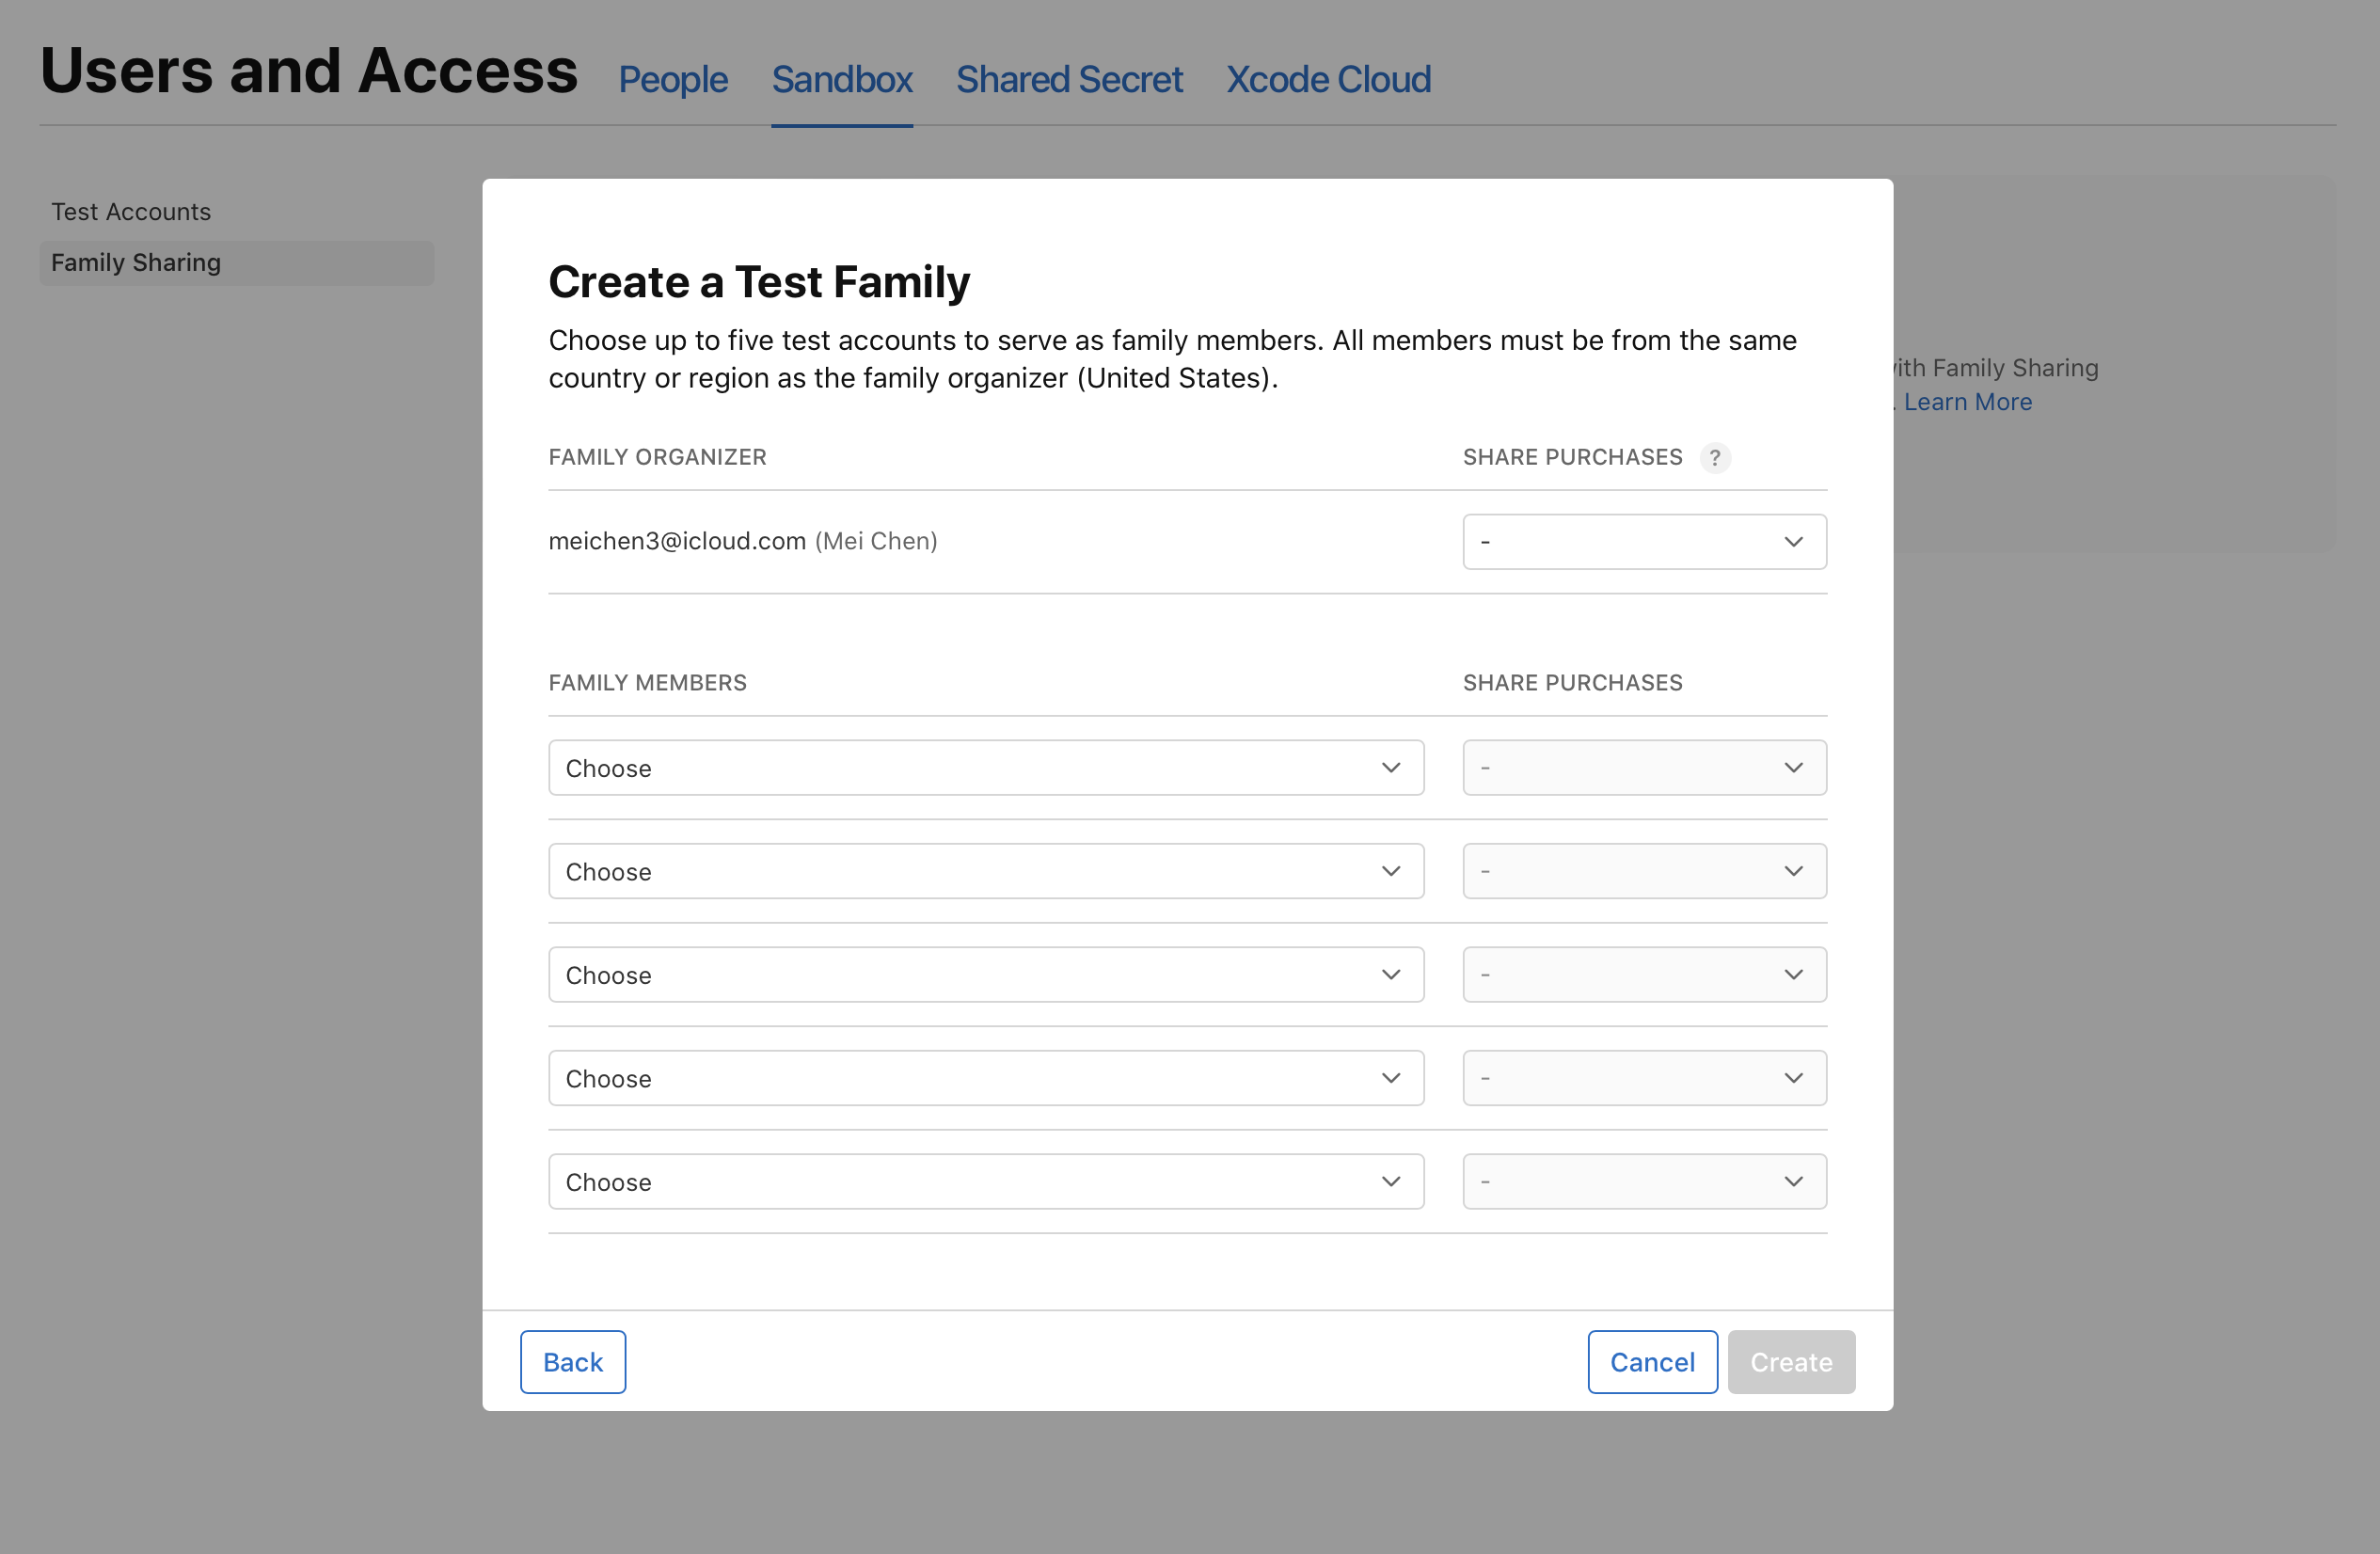 截屏为“家人共享”页面，显示“创建测试家庭”对话框，其中包含五个“家庭成员”菜单。